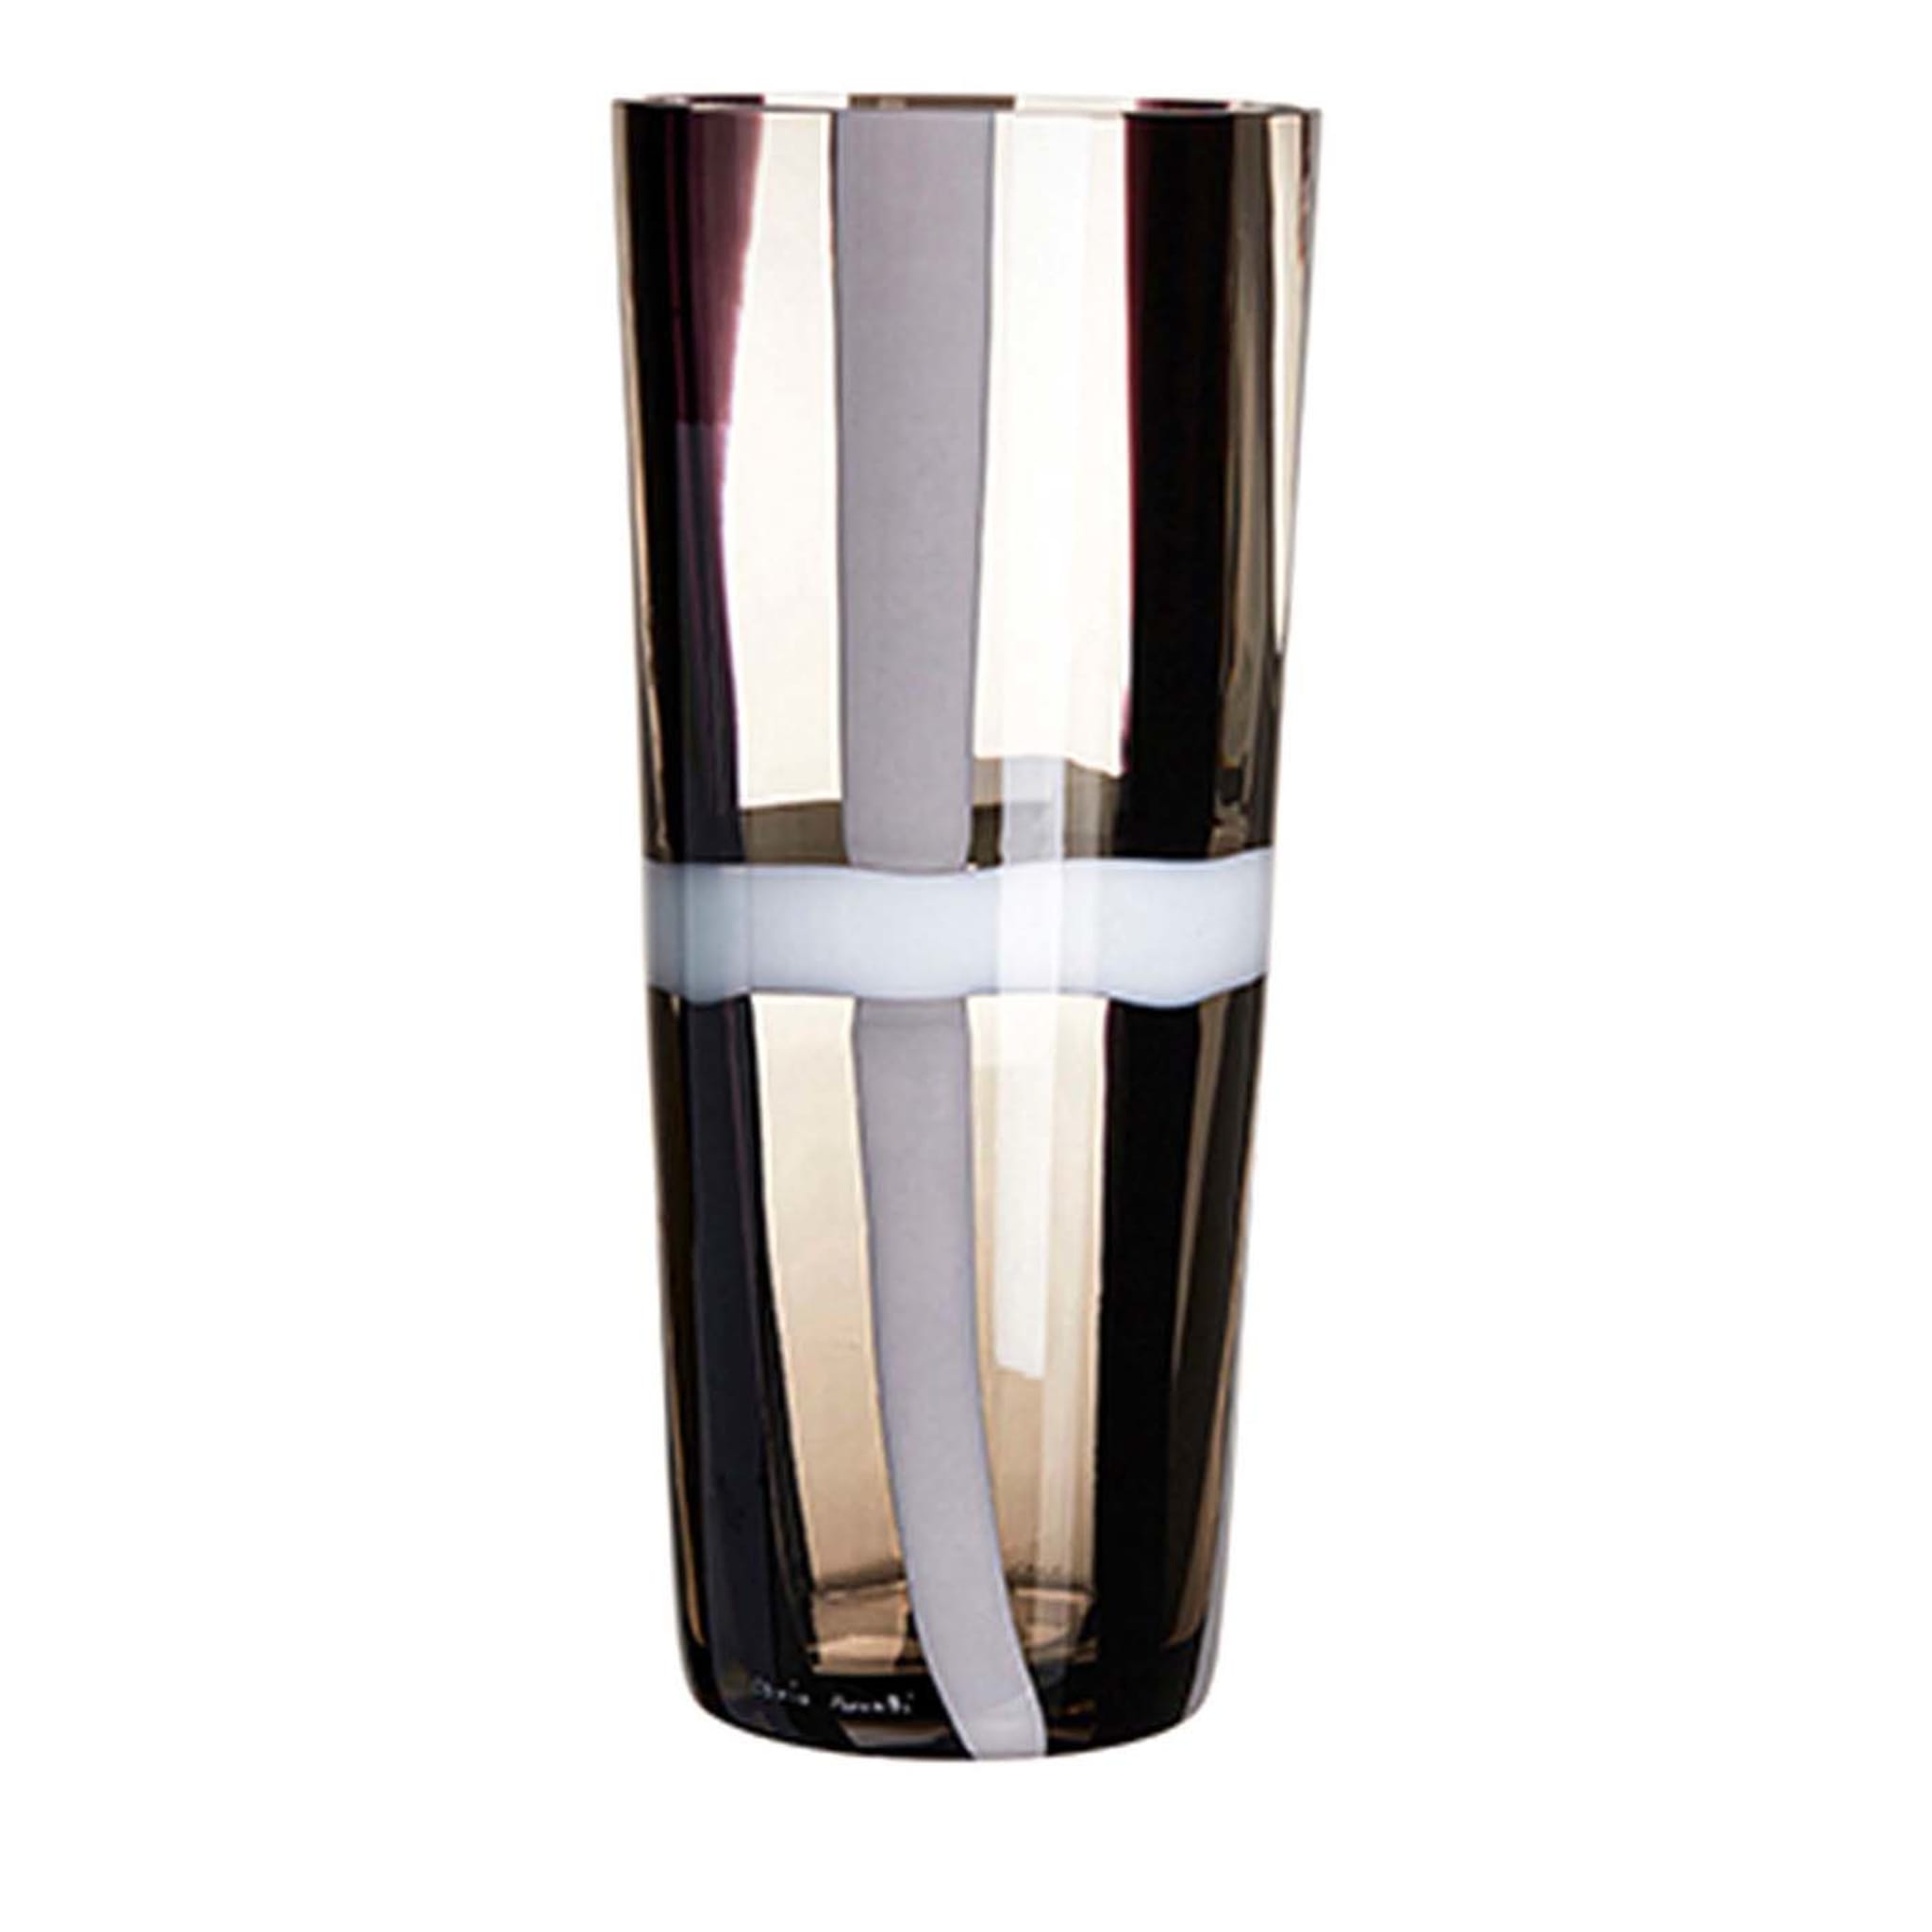 Troncocono Small Black-and-White Stripes Vase by Carlo Moretti - Main view